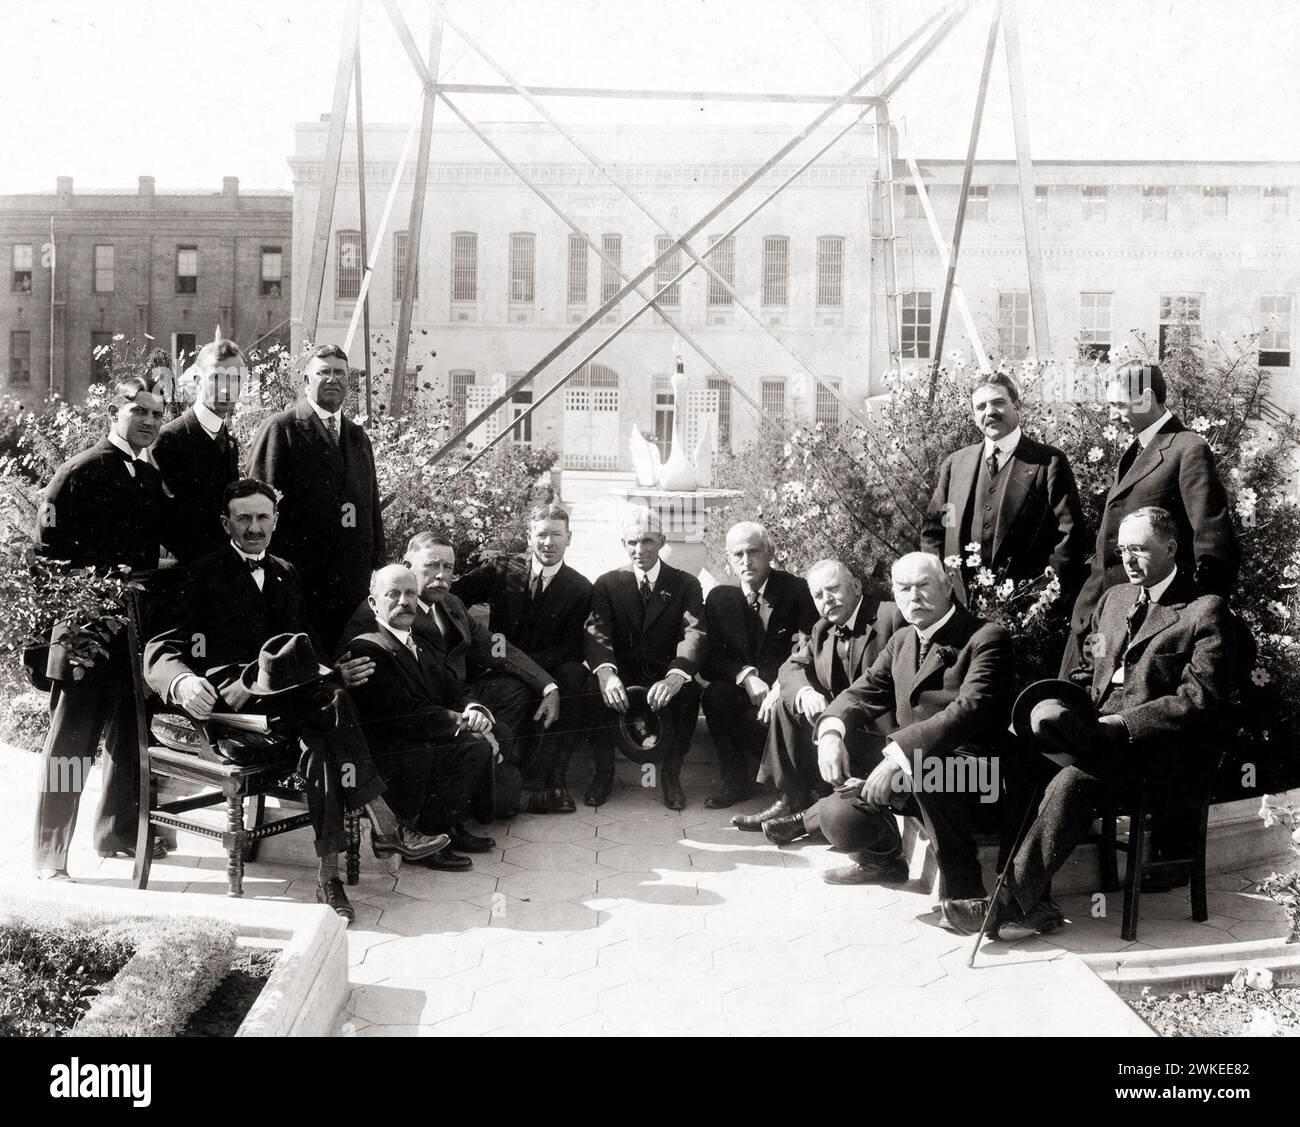 Henry Ford et ses amis devant la prison de San Quentin - photographie d'époque, 1915 Banque D'Images